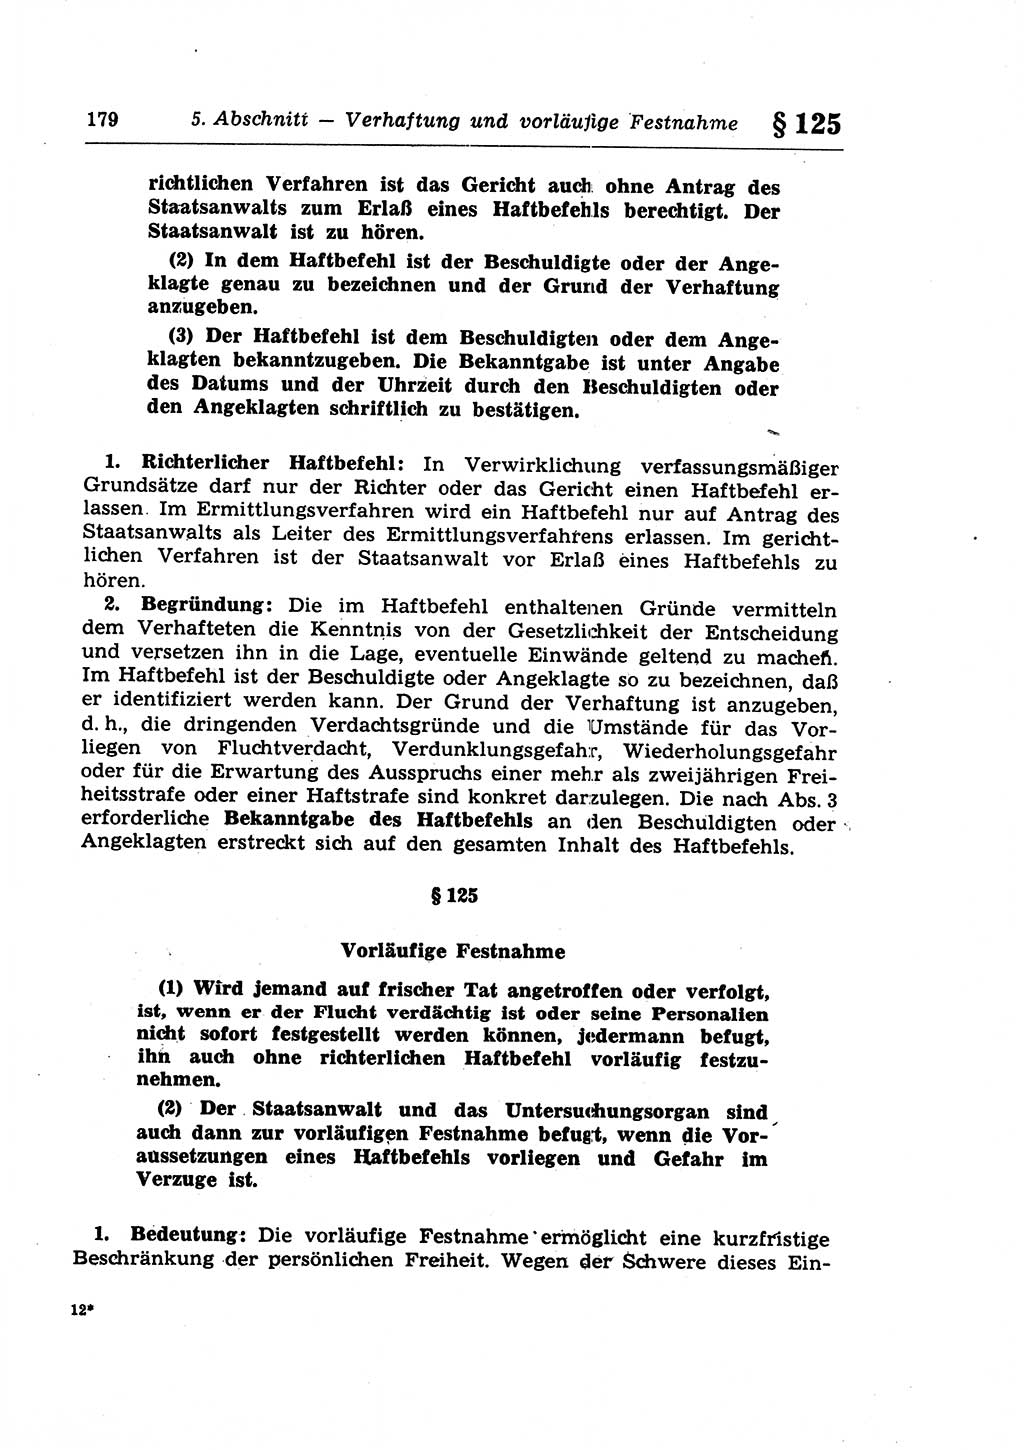 Strafprozeßrecht der DDR (Deutsche Demokratische Republik), Lehrkommentar zur Strafprozeßordnung (StPO) 1968, Seite 179 (Strafprozeßr. DDR Lehrkomm. StPO 19688, S. 179)